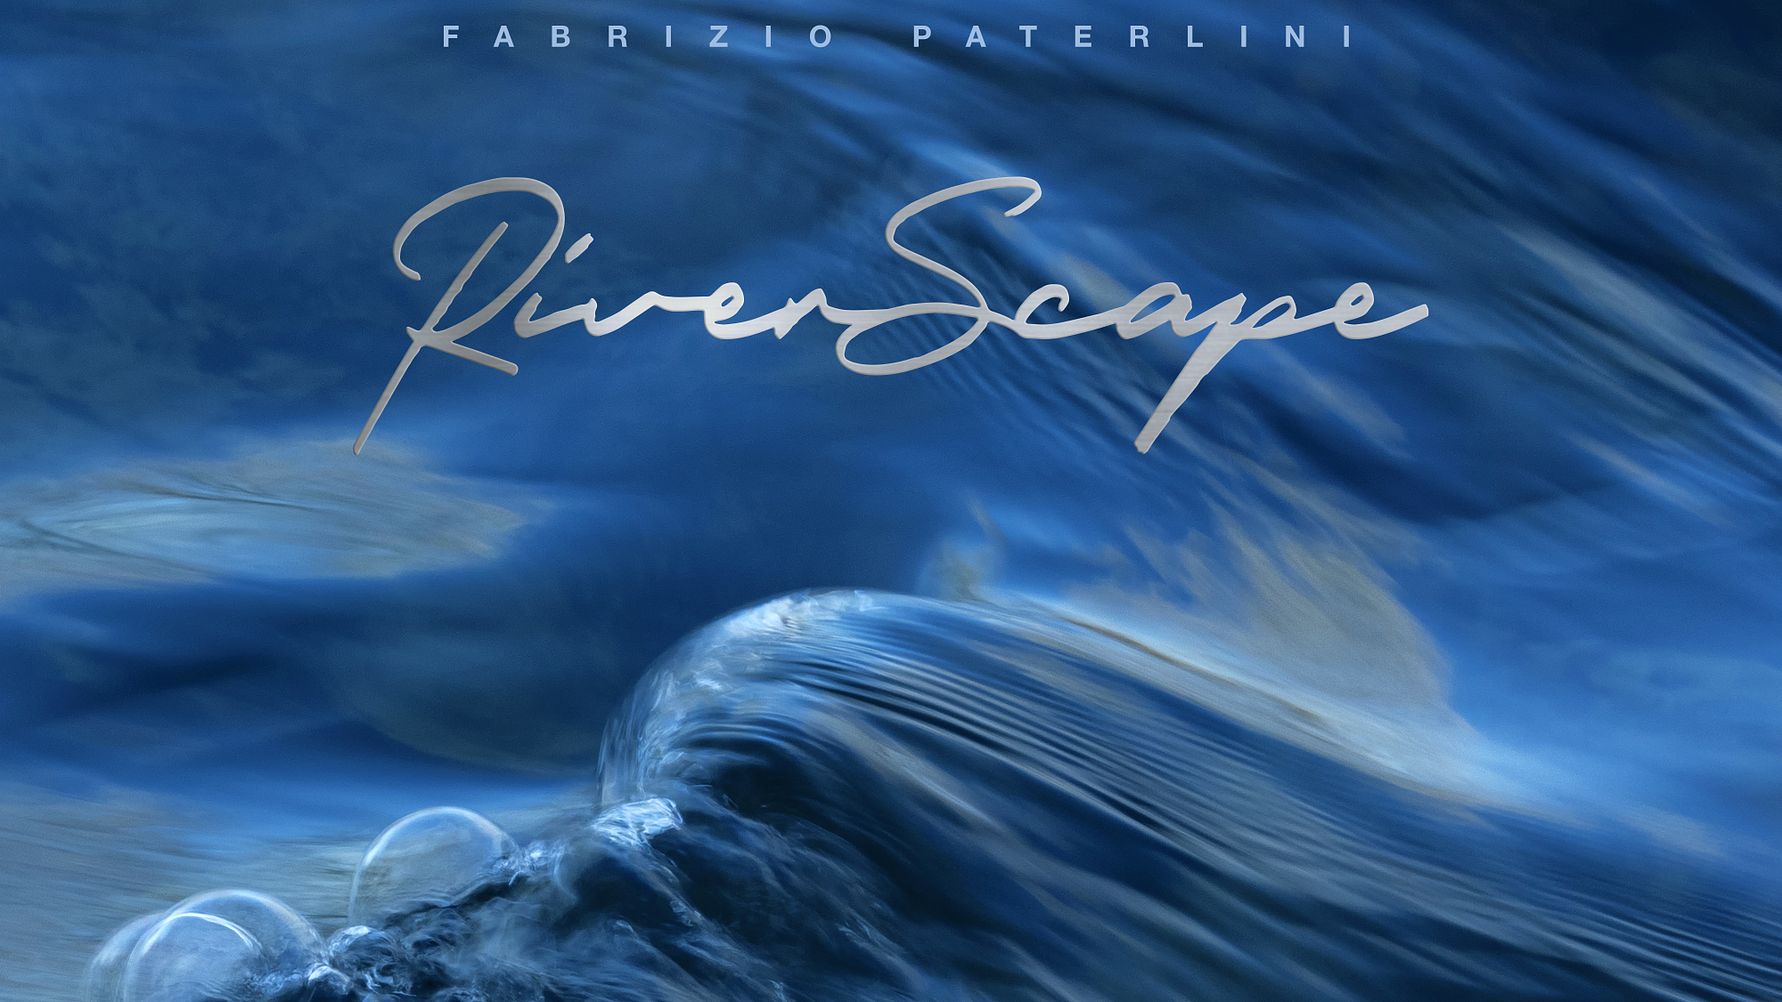 Il nuovo album di Fabrizio Batterlini Riverscape mette in risalto il linguaggio, gli odori e le storie racchiusi nella ricca storia dell’acqua.